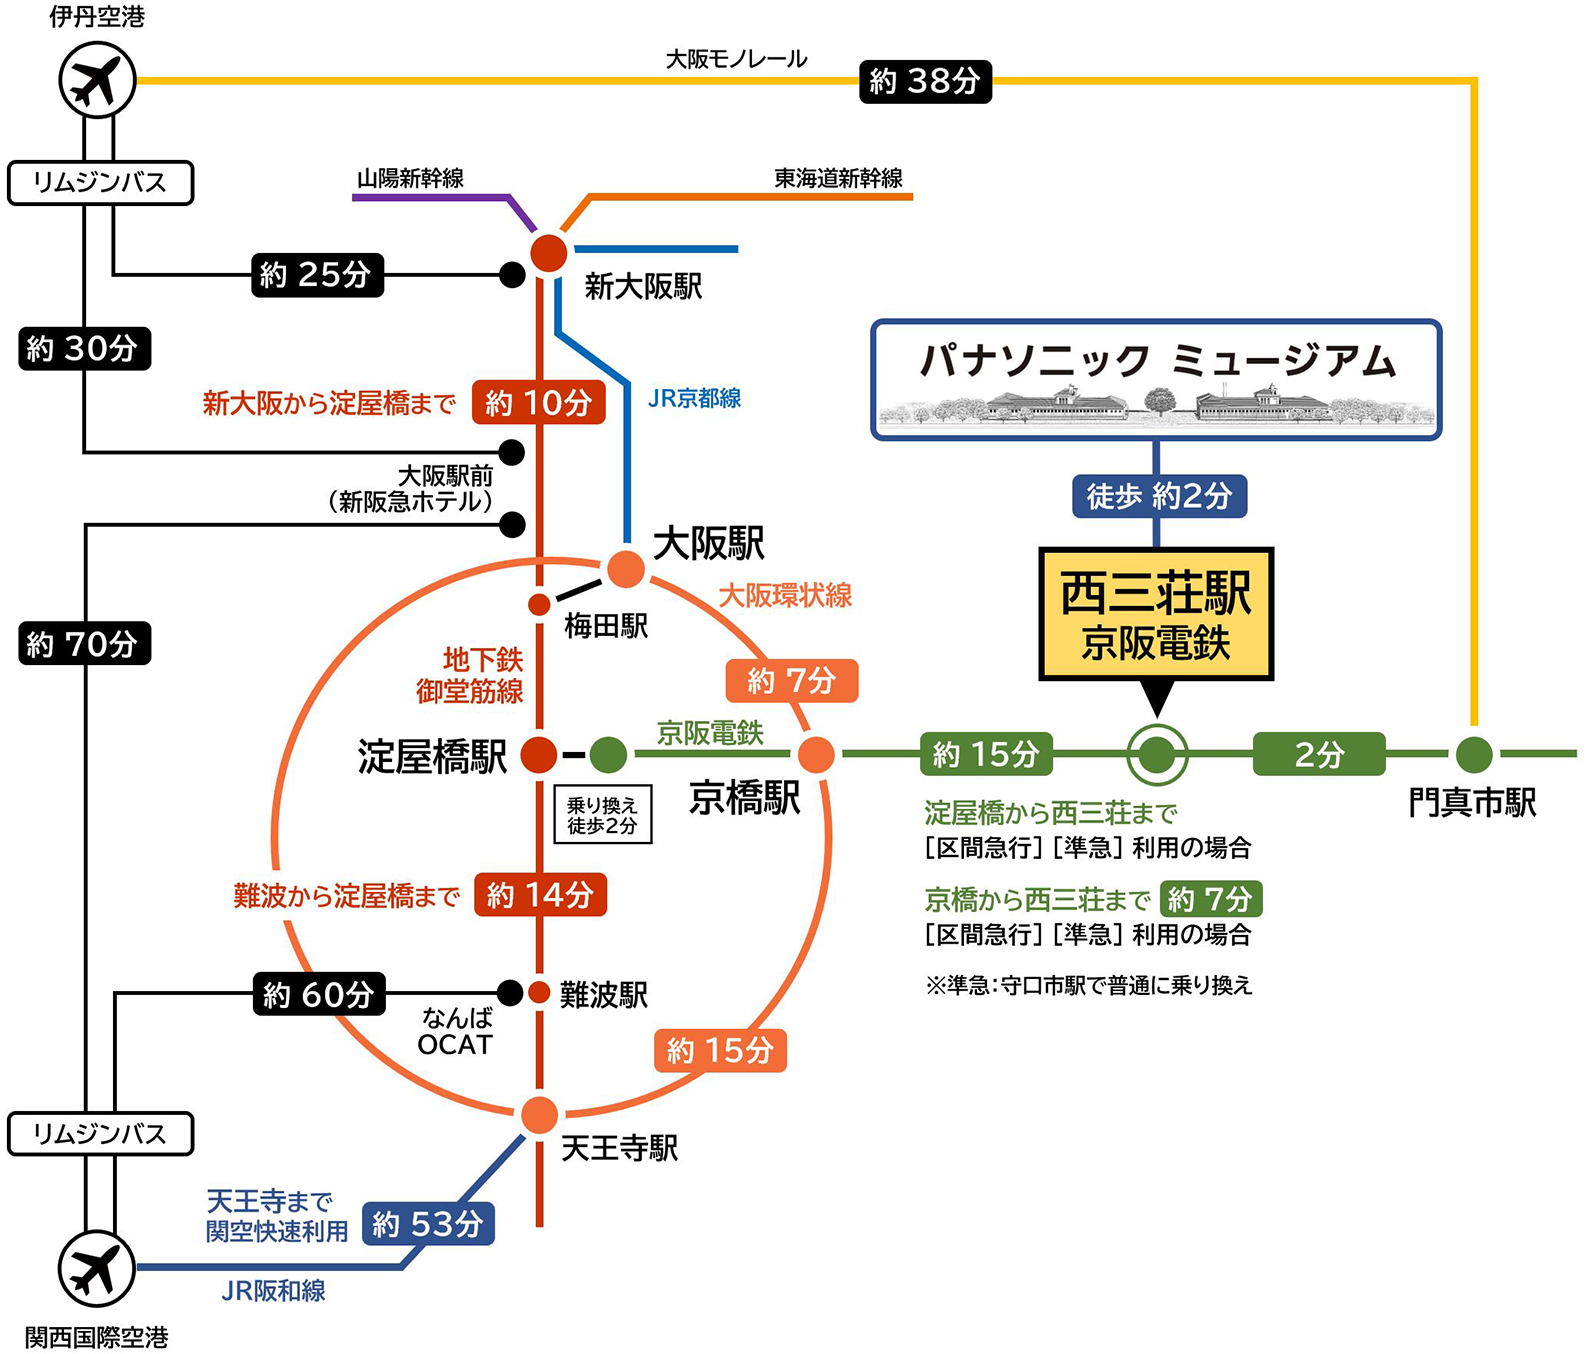 新大阪駅方面からは大阪駅で大阪環状線の外回りに乗り、約7分で京橋駅につきます。徒歩3分ほどにある京阪京橋駅で、京都方面の京阪電車に乗り換えます。区間急行で約10分、西三荘駅で下車します。京橋から準急に乗車した場合は途中の守口市駅で、各駅停車に乗り換えます。西三荘駅から、パナソニックミュージアムまでは徒歩約2分です。関西国際空港方面からは、JRの関空快速に乗ると、約70分で京橋駅につきます。徒歩3分ほどにある京阪京橋駅で、京都方面の京阪電車に乗り換えます。区間急行に乗り約10分、西三荘駅で下車します。京橋から準急に乗車した場合は途中の守口市駅で、各駅停車に乗り換えます。西三荘駅から、パナソニックミュージアムまでは徒歩約2分です。なお、伊丹空港からはリムジンバスで新大阪駅へ25分、大阪駅へ約30分でつきます。